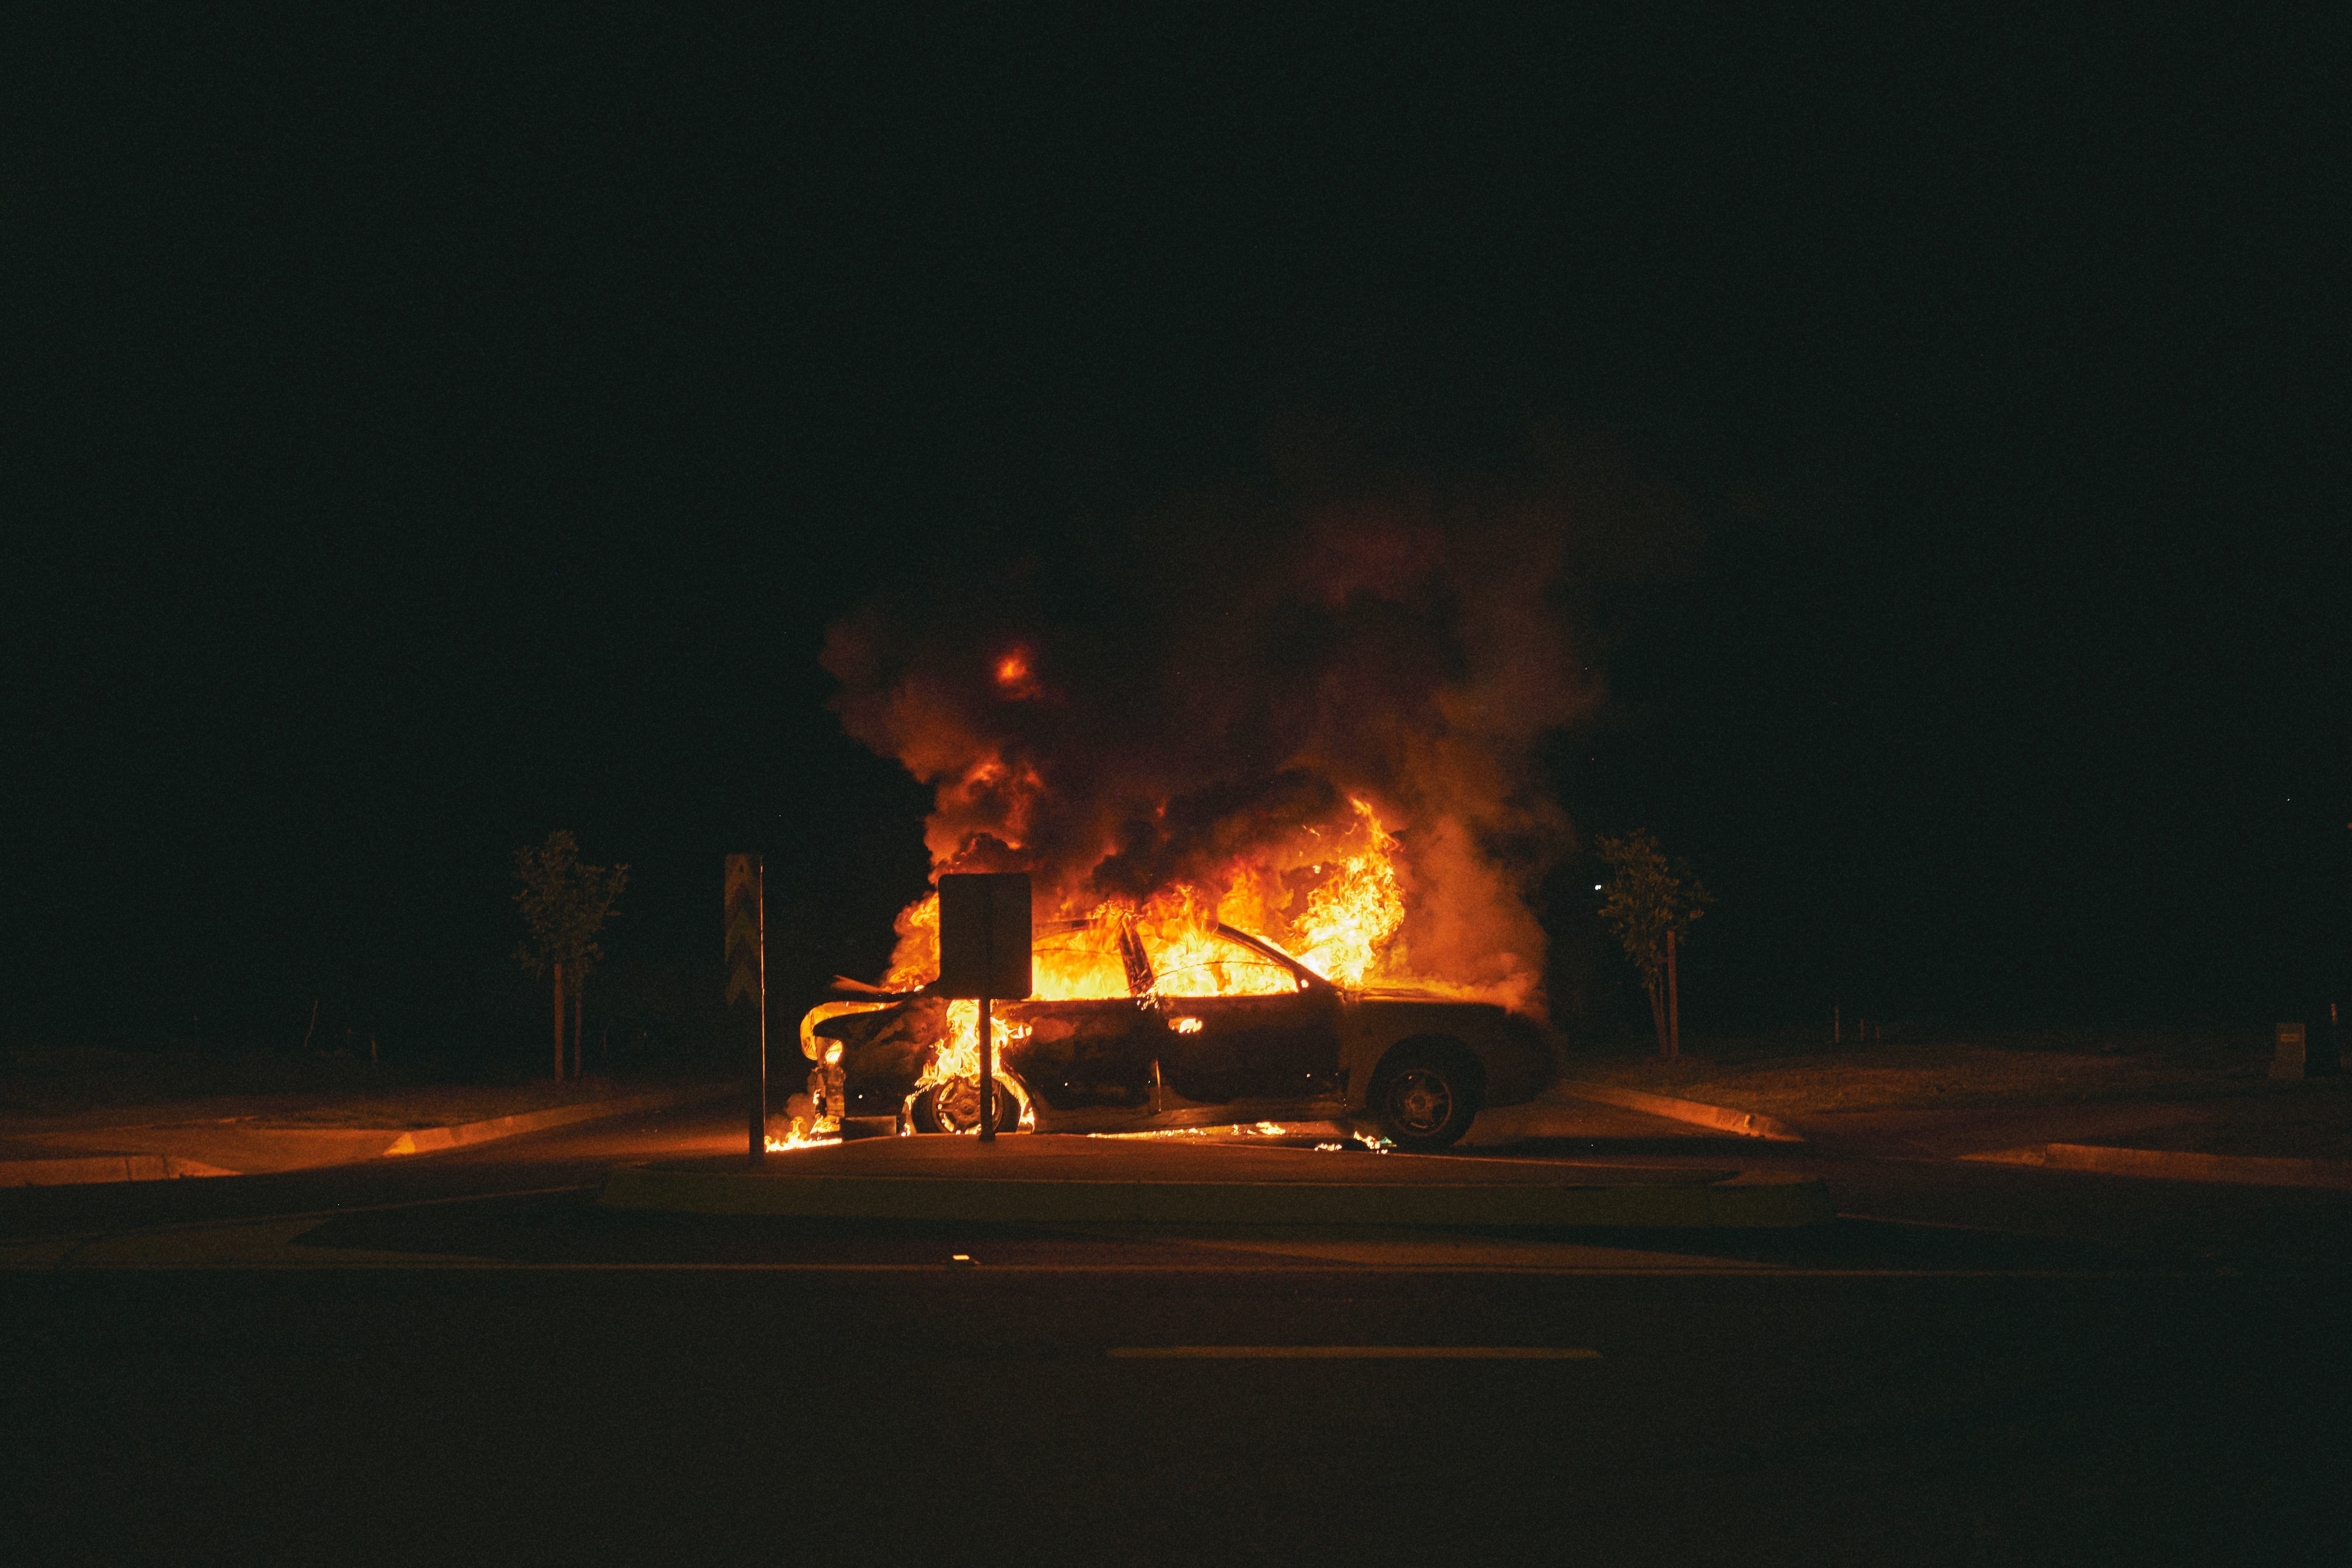 Un automóvil en llamas en medio de la noche. | Foto: Unsplash